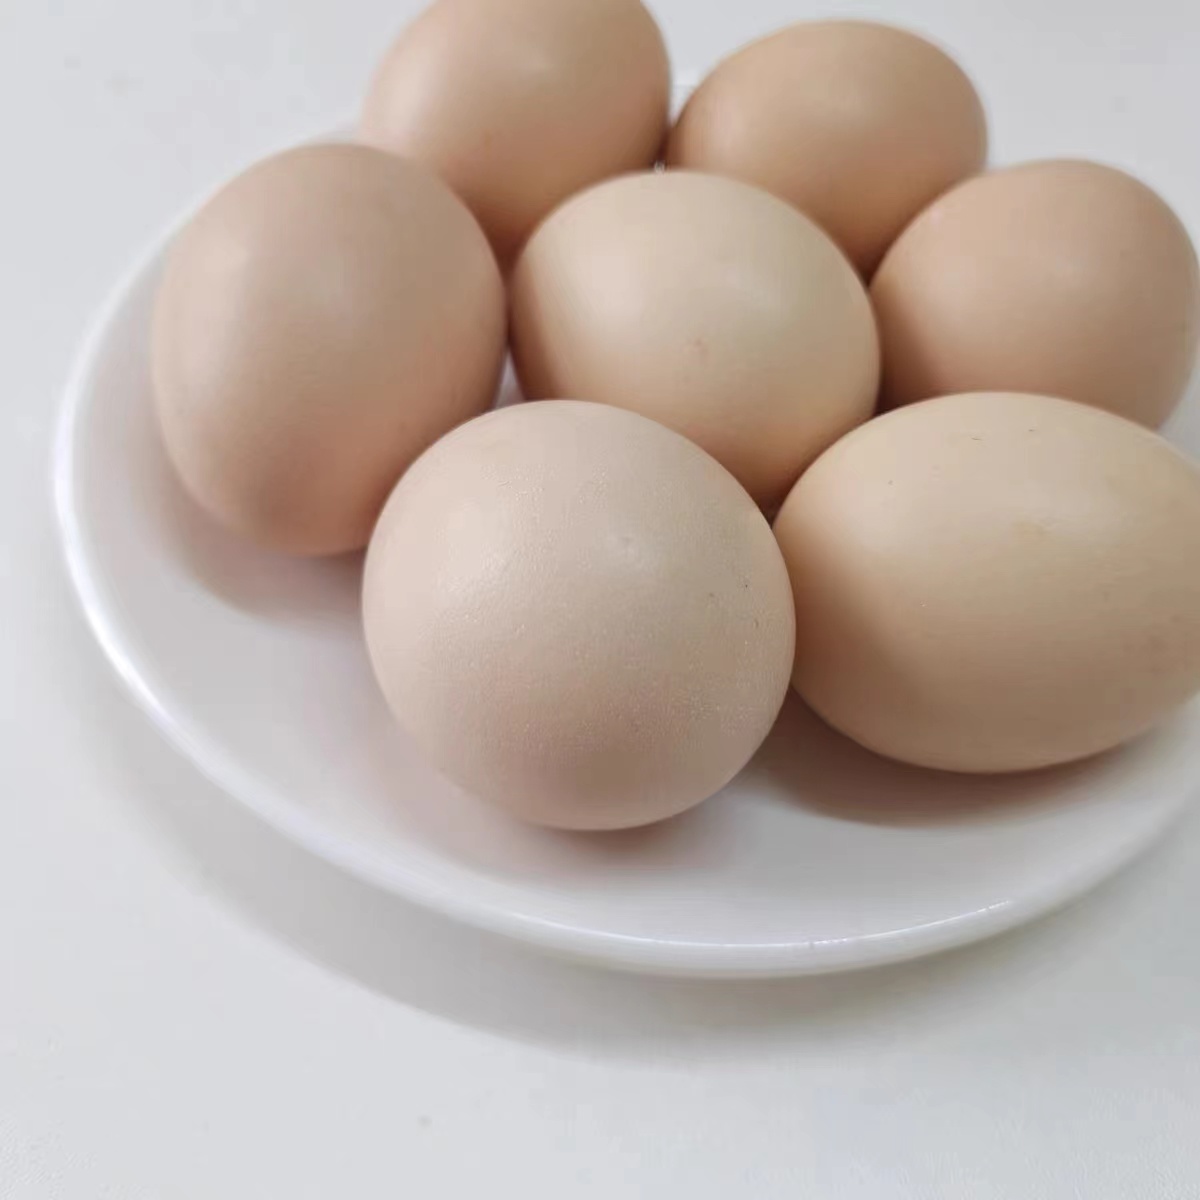 吃鸡蛋有什么好处呢？每天早上吃一个鸡蛋对身体好不好?